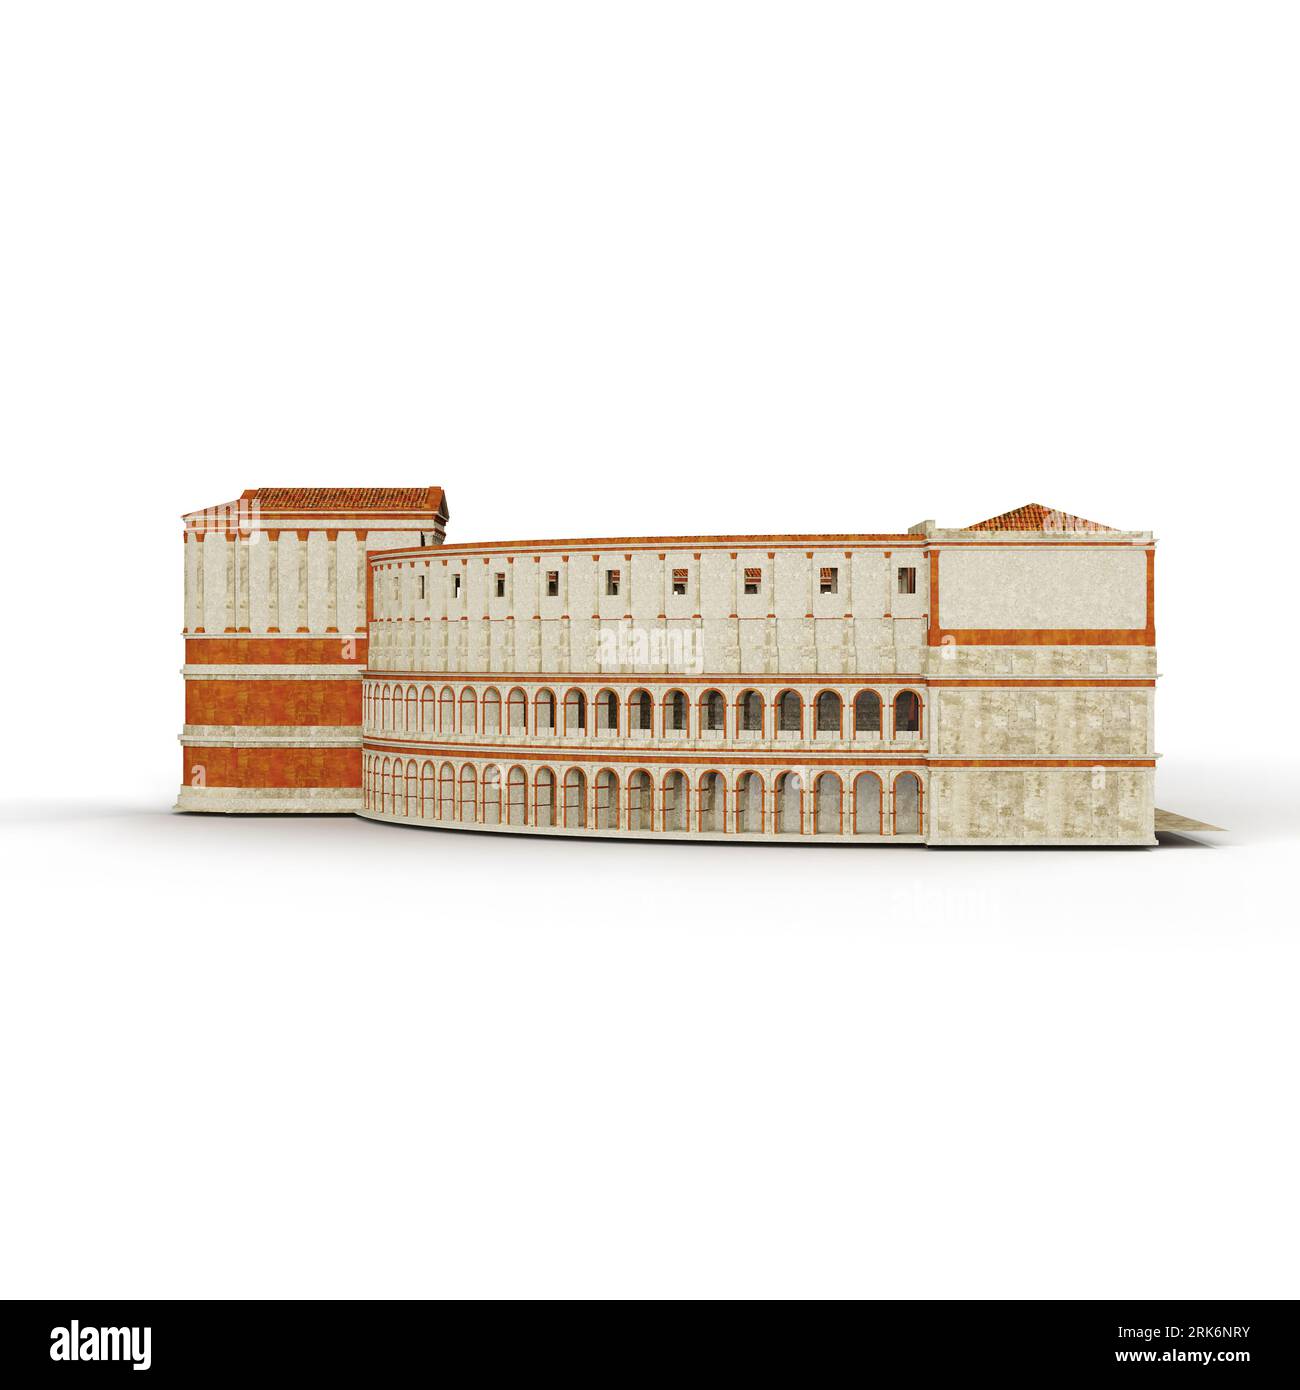 Ein 3D-Rendering eines mehrstöckigen Gebäudemodells mit verschiedenen Fenstern, die auf einem weißen Hintergrund isoliert sind Stockfoto